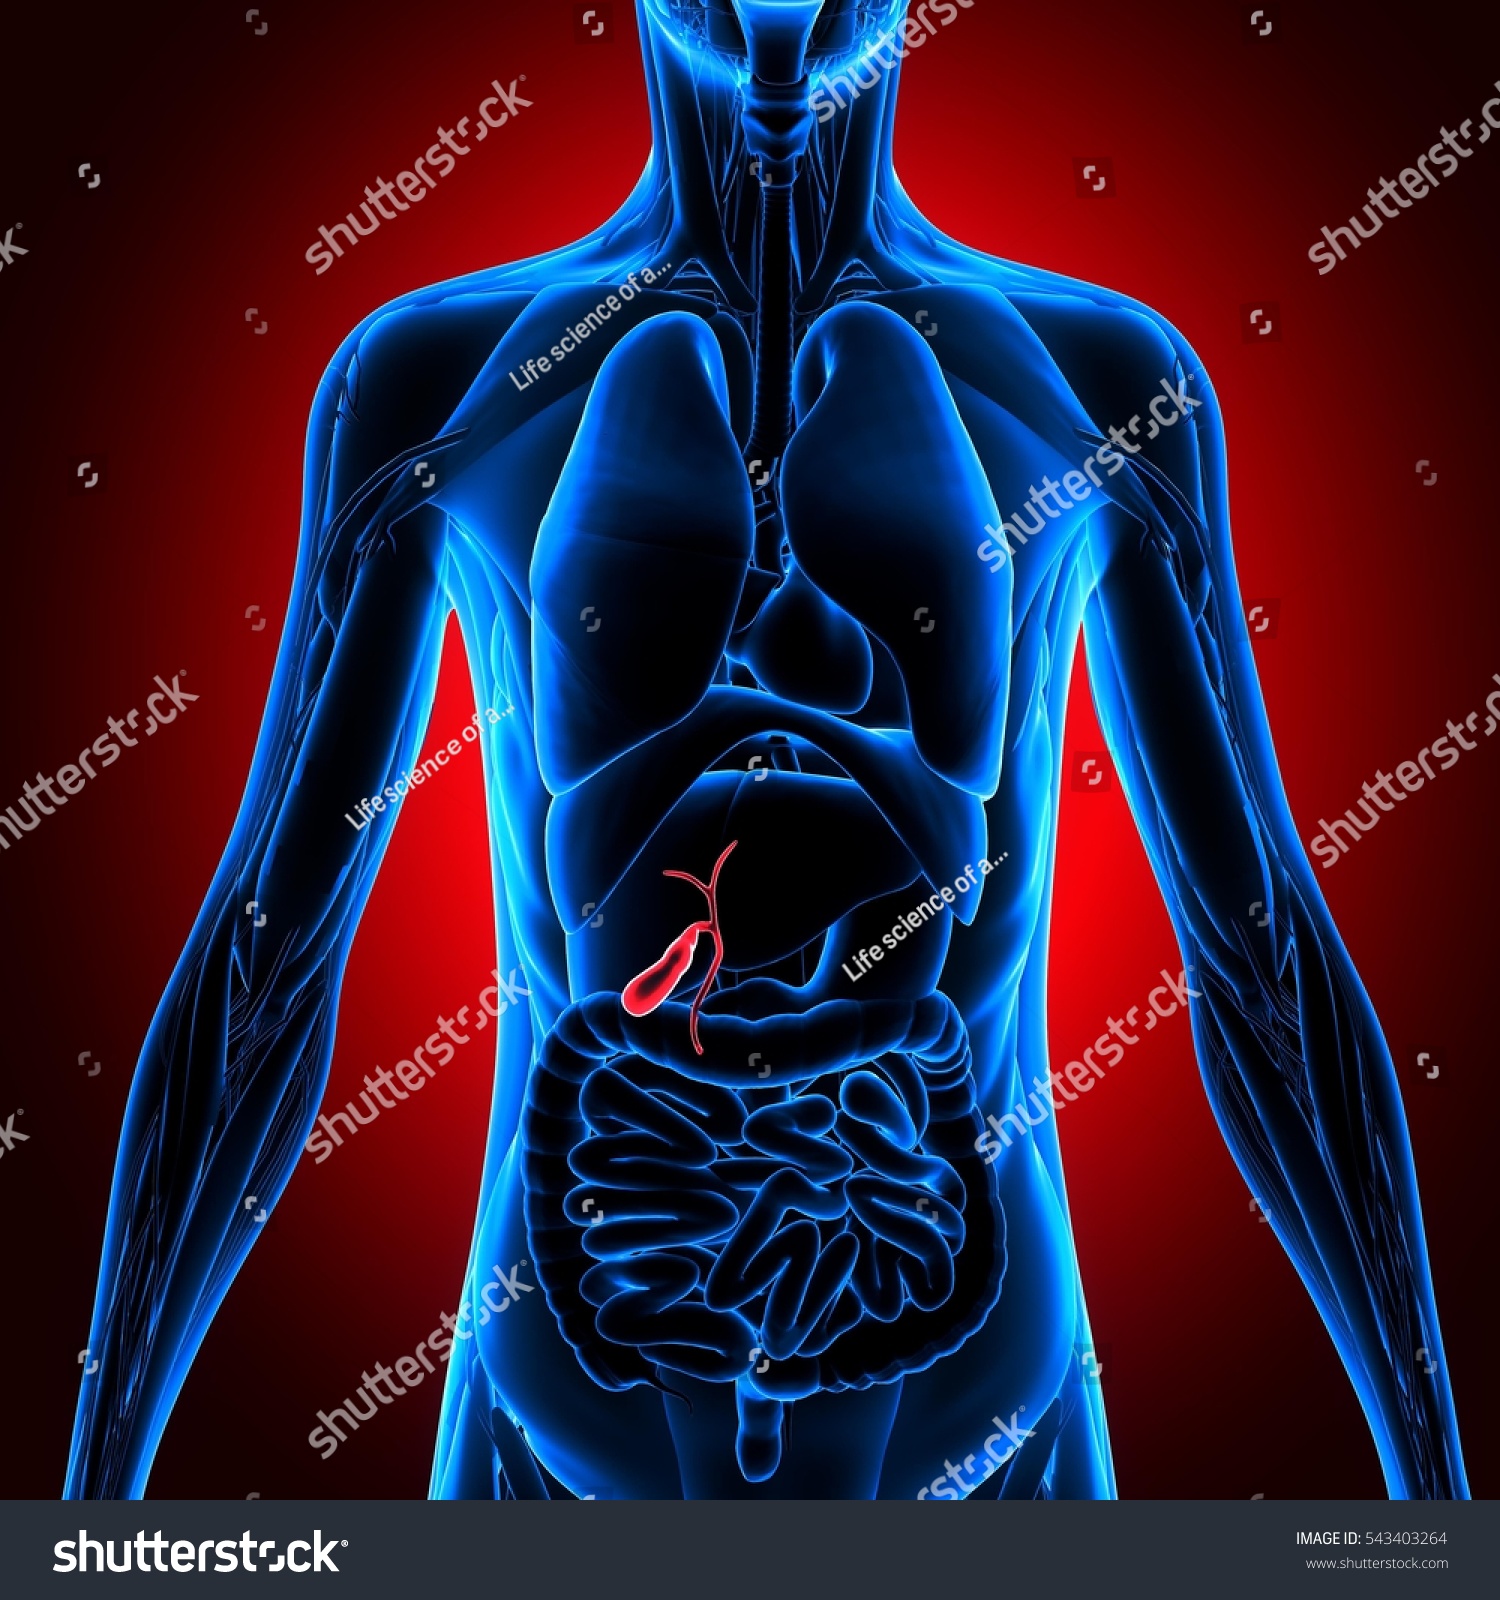 3d Illustration Human Body Organ - 543403264 : Shutterstock